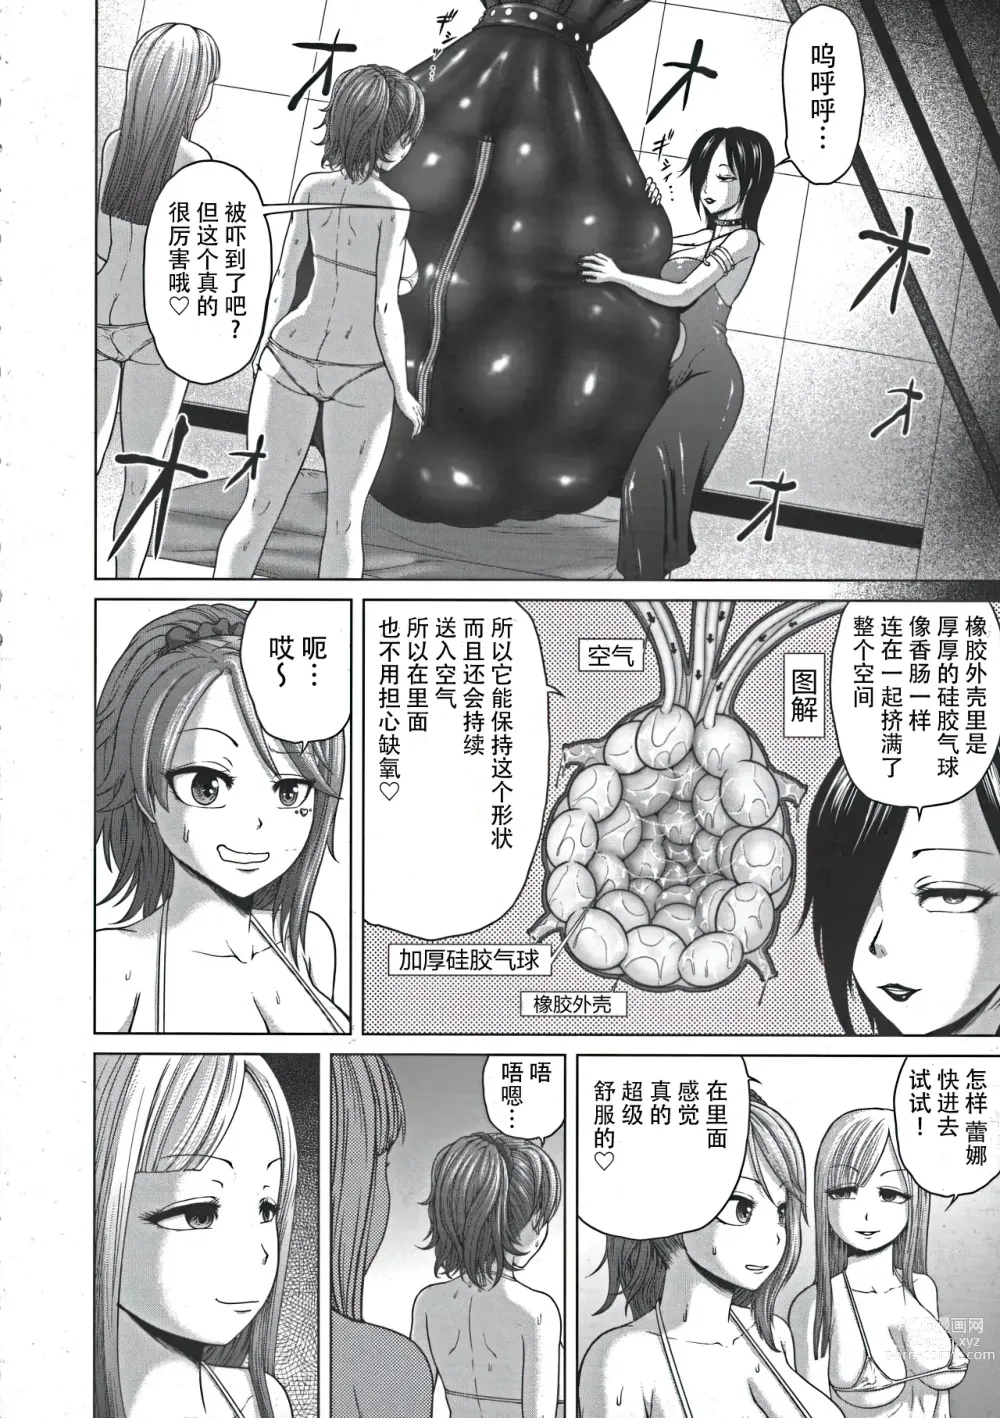 Page 6 of manga Hentai Tamamayu Club